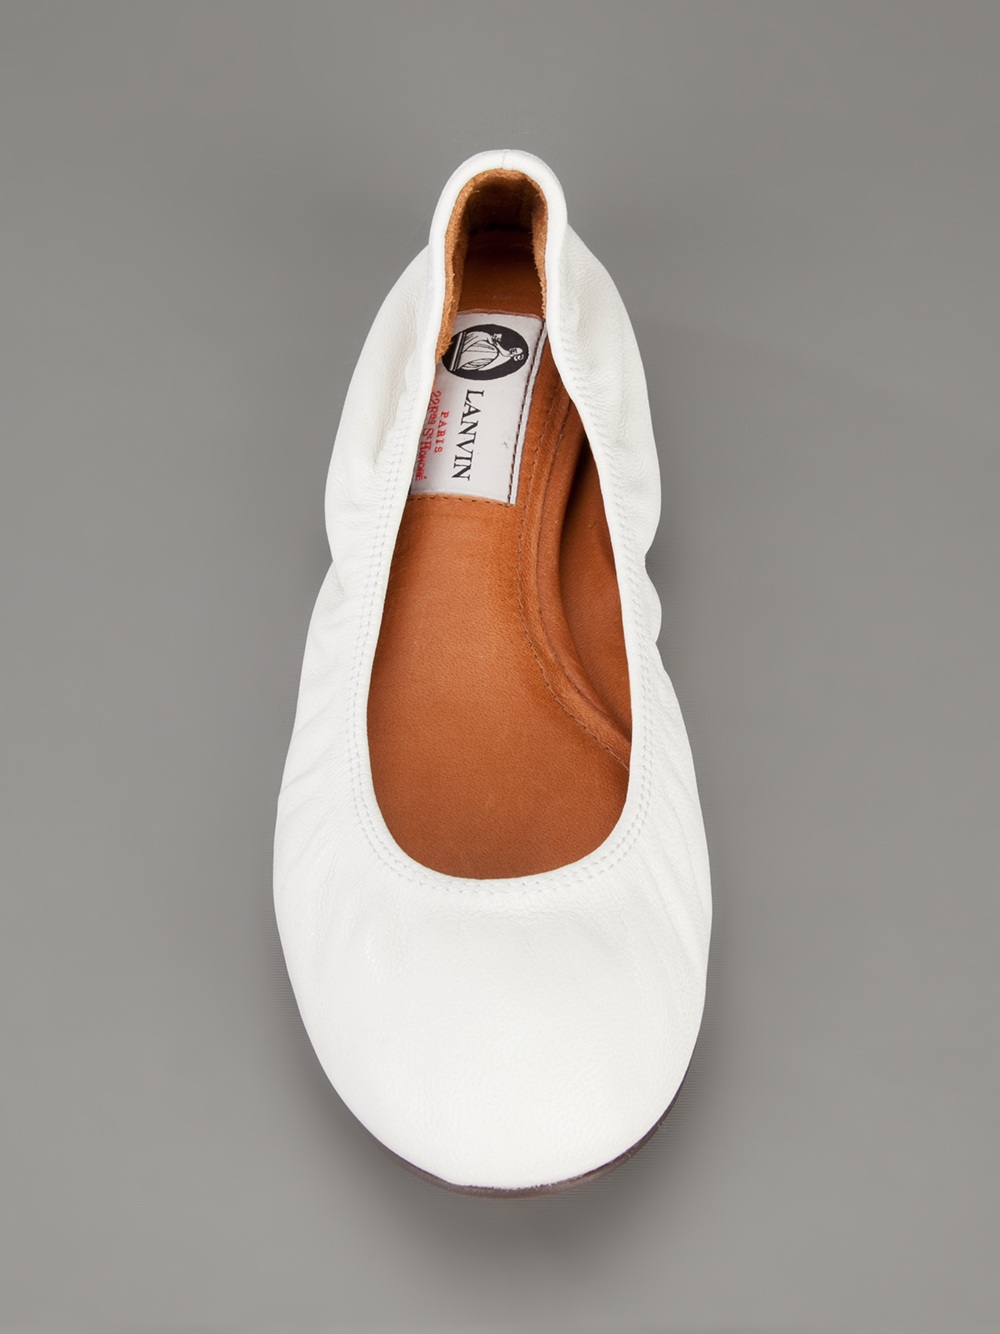 Lanvin Round Toe Ballet Flats in White - Lyst